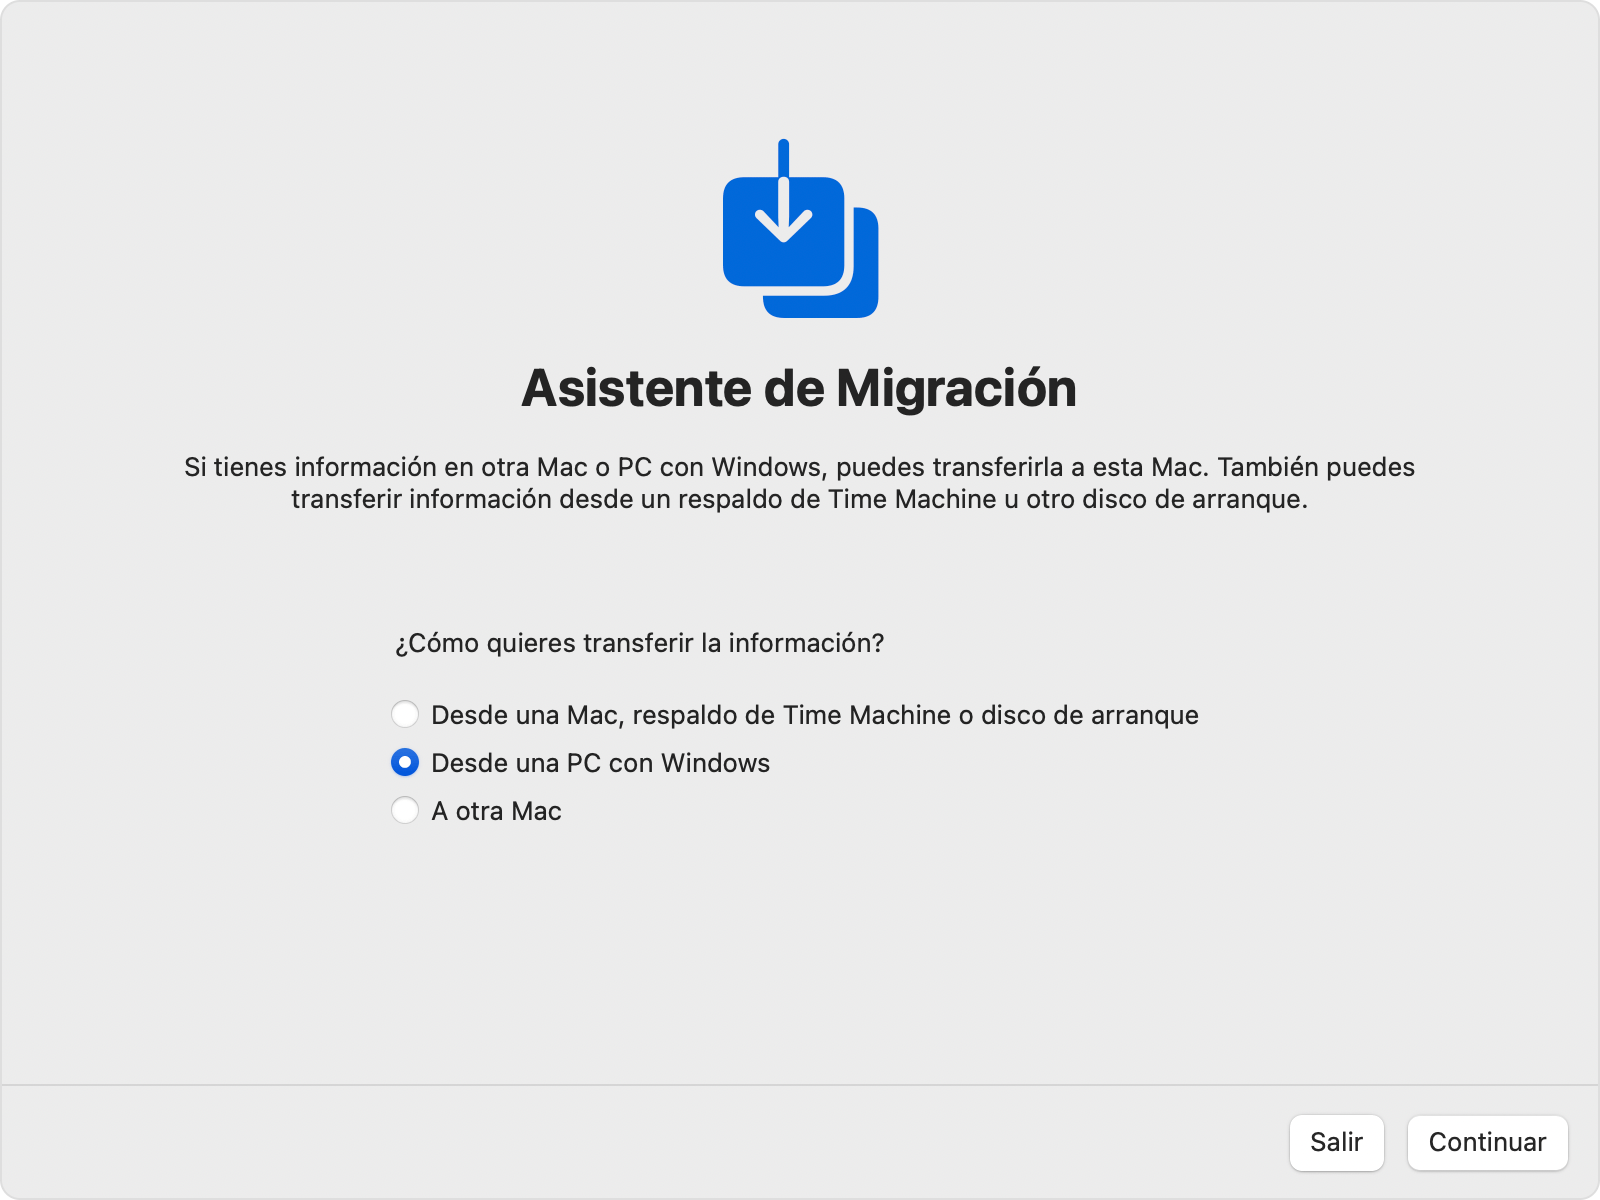 Asistente de Migración en la Mac: Transferir “Desde una PC con Windows”